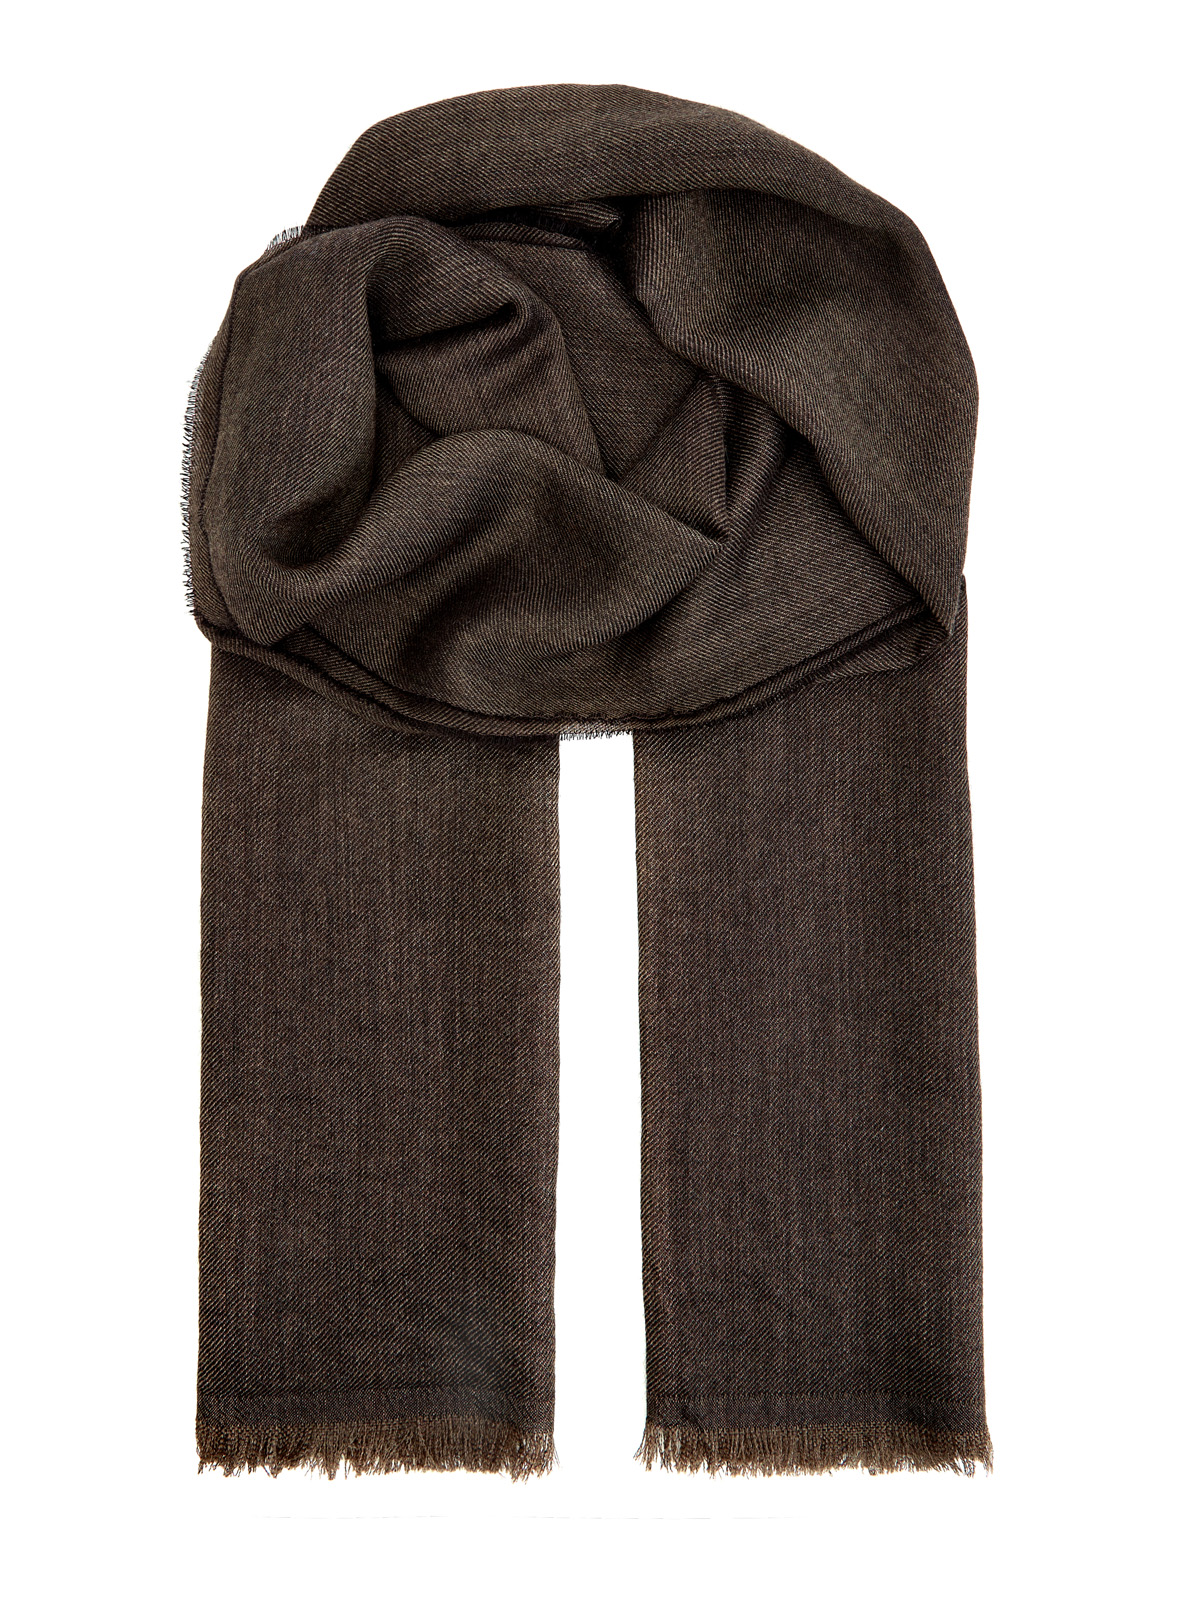 Кашемировый шарф с волокнами шелка в коричневой гамме BERTOLO CASHMERE, цвет коричневый, размер 58 - фото 1